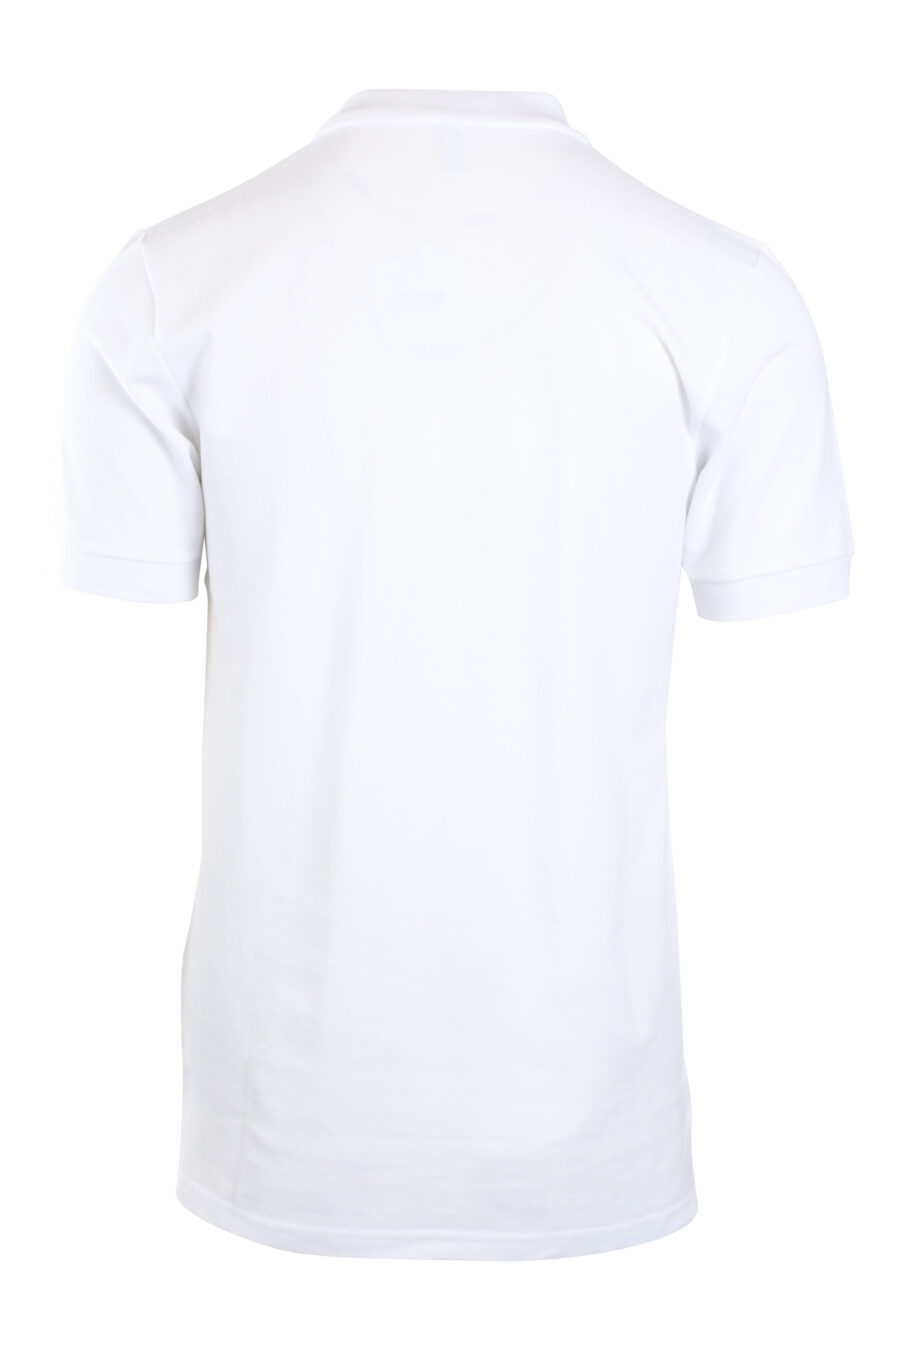 Pólo branco com mini-logotipo preto "swim" - IMG 2182